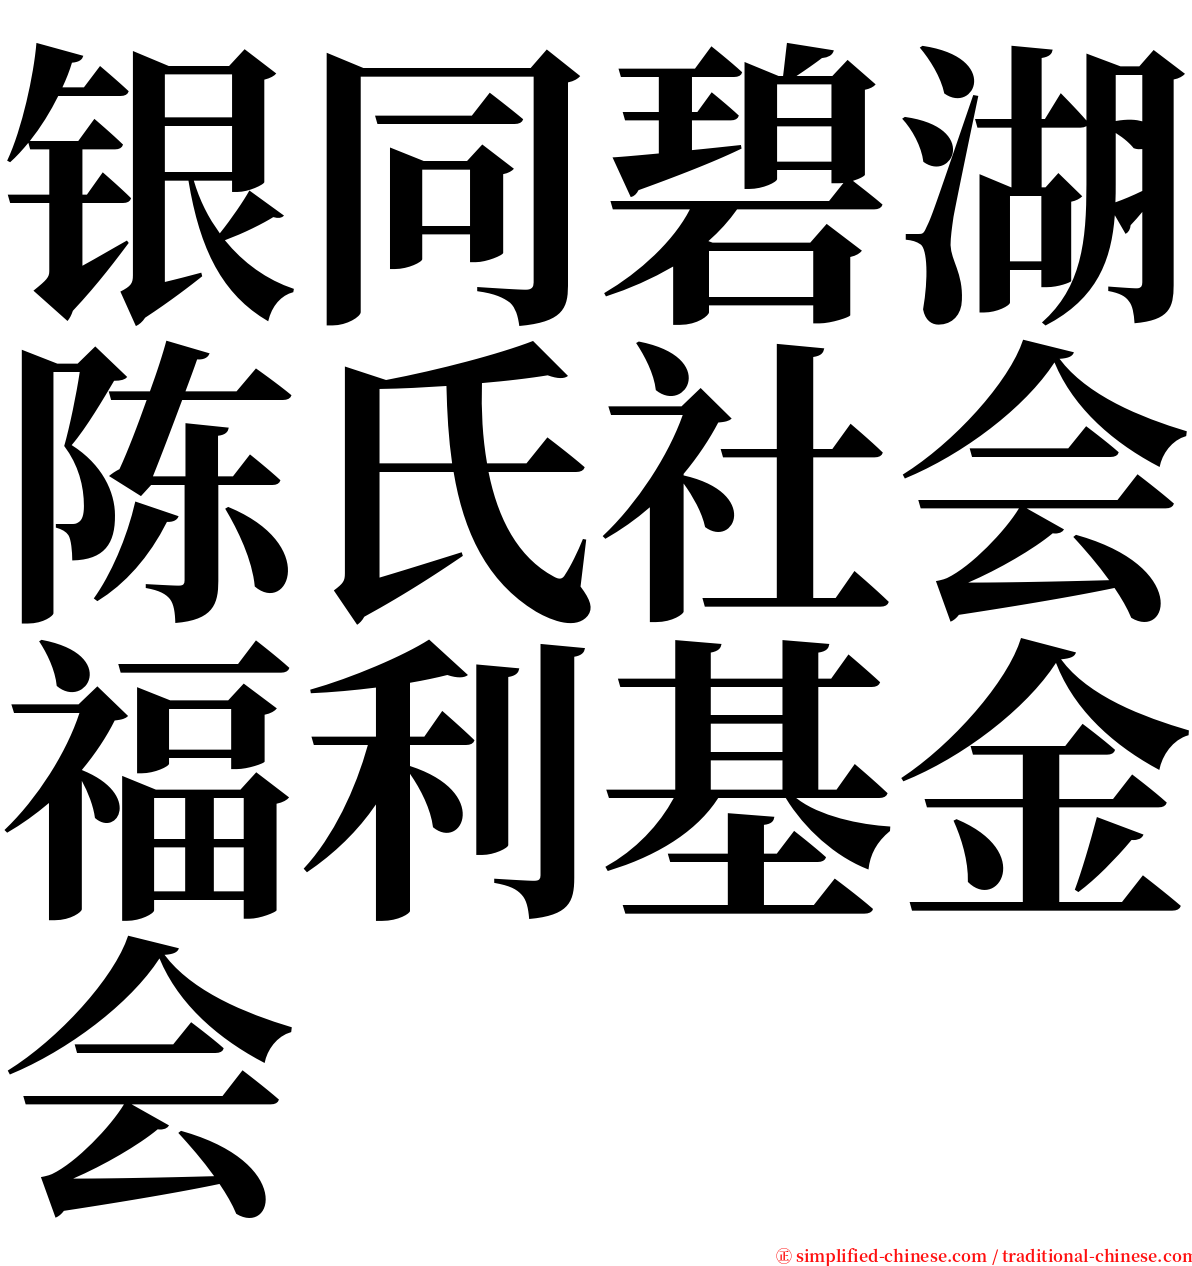 银同碧湖陈氏社会福利基金会 serif font